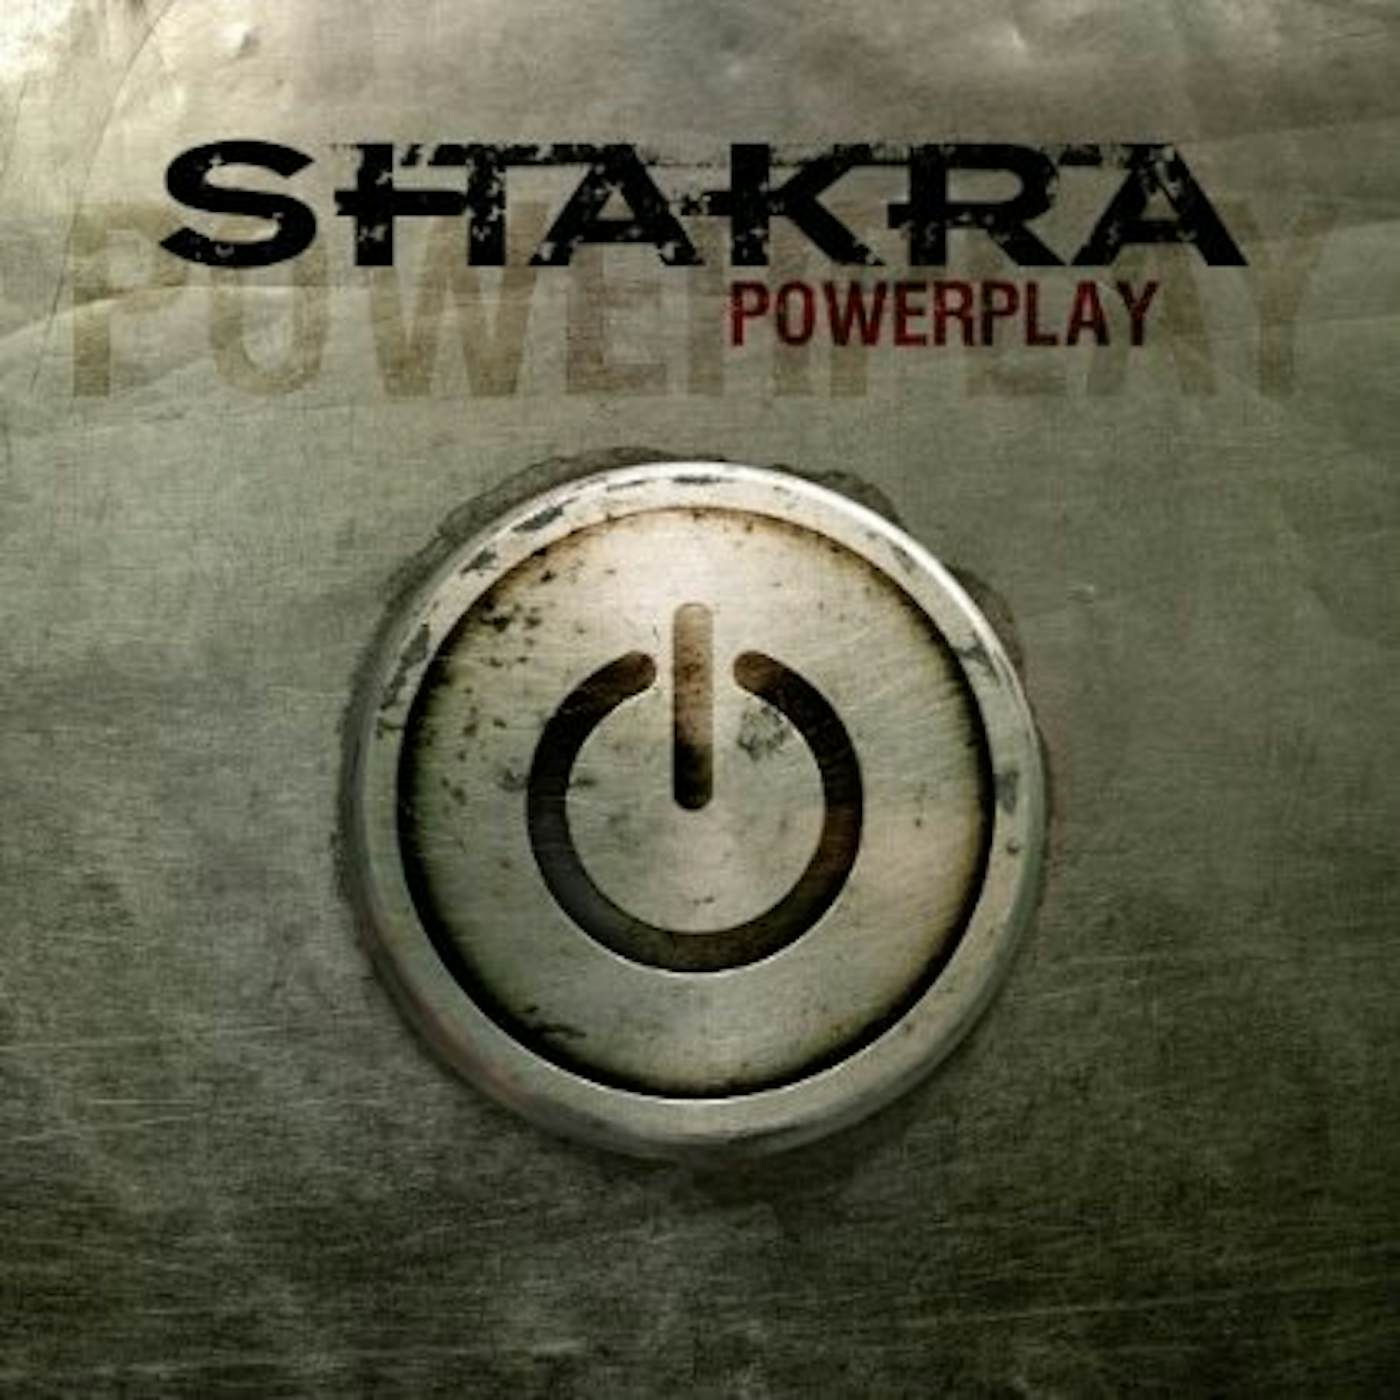 Shakra POWERPLAY CD